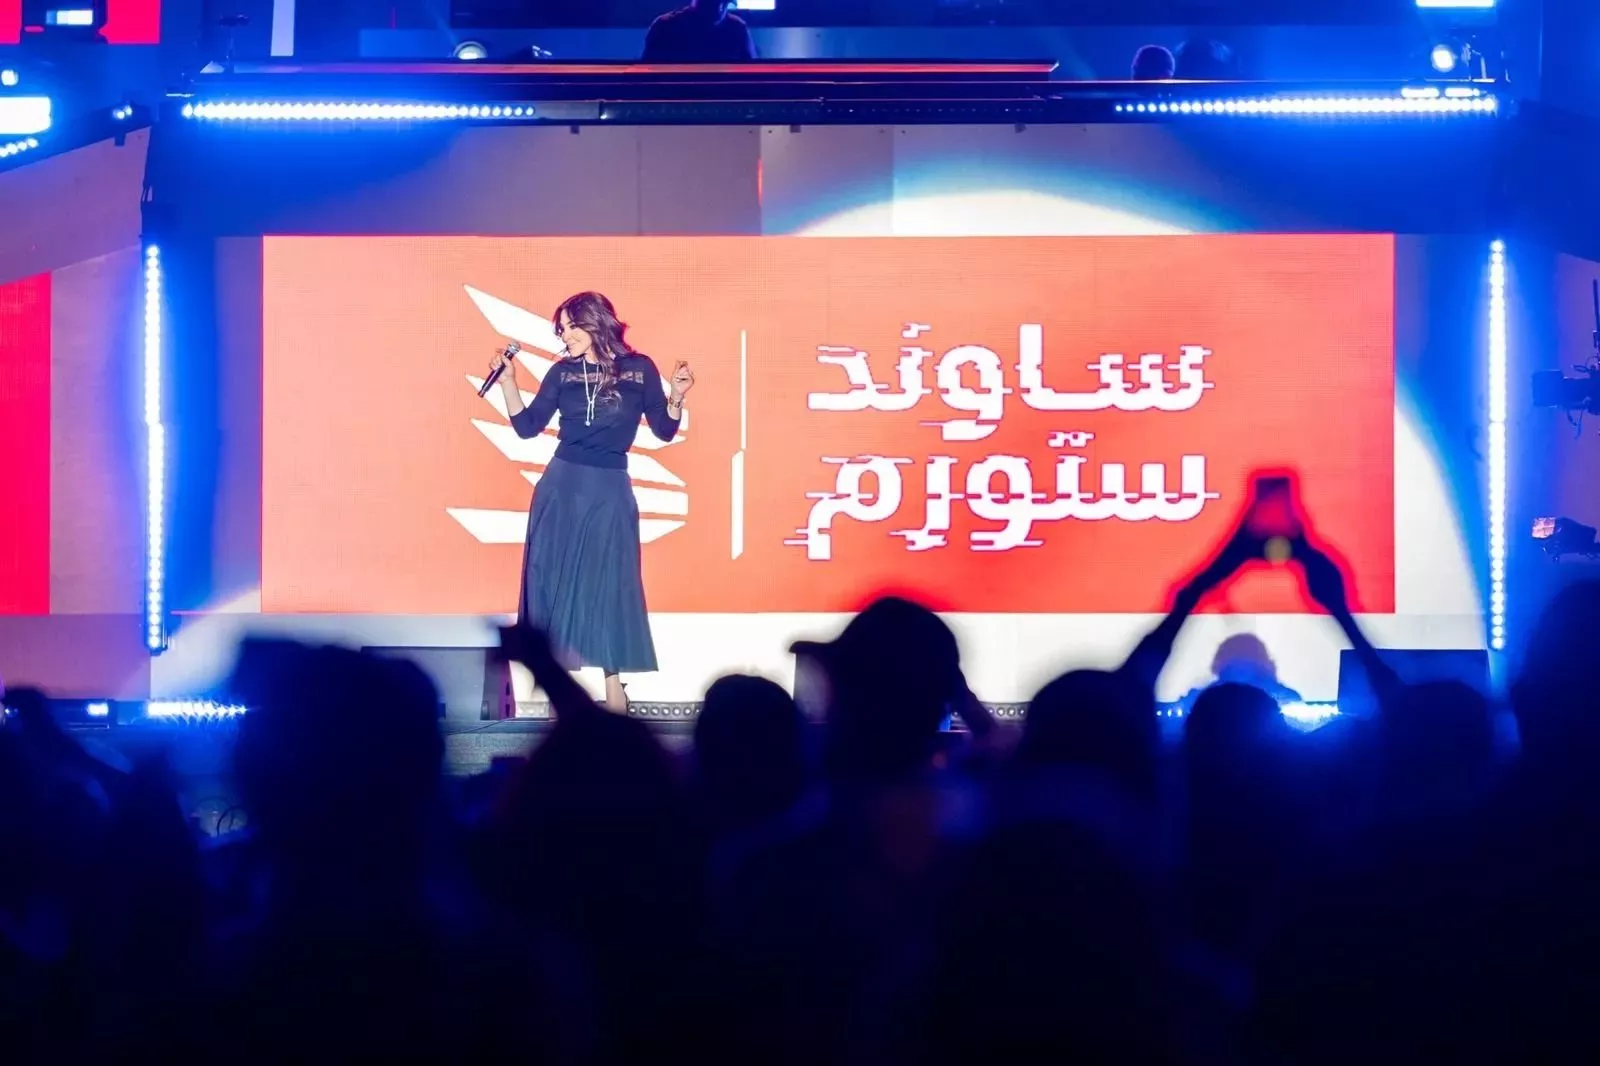 بالصور والفيديو، اليوم الأول من مهرجان مدل بيست 2021 في السعودية يحقق نجاح مبهر